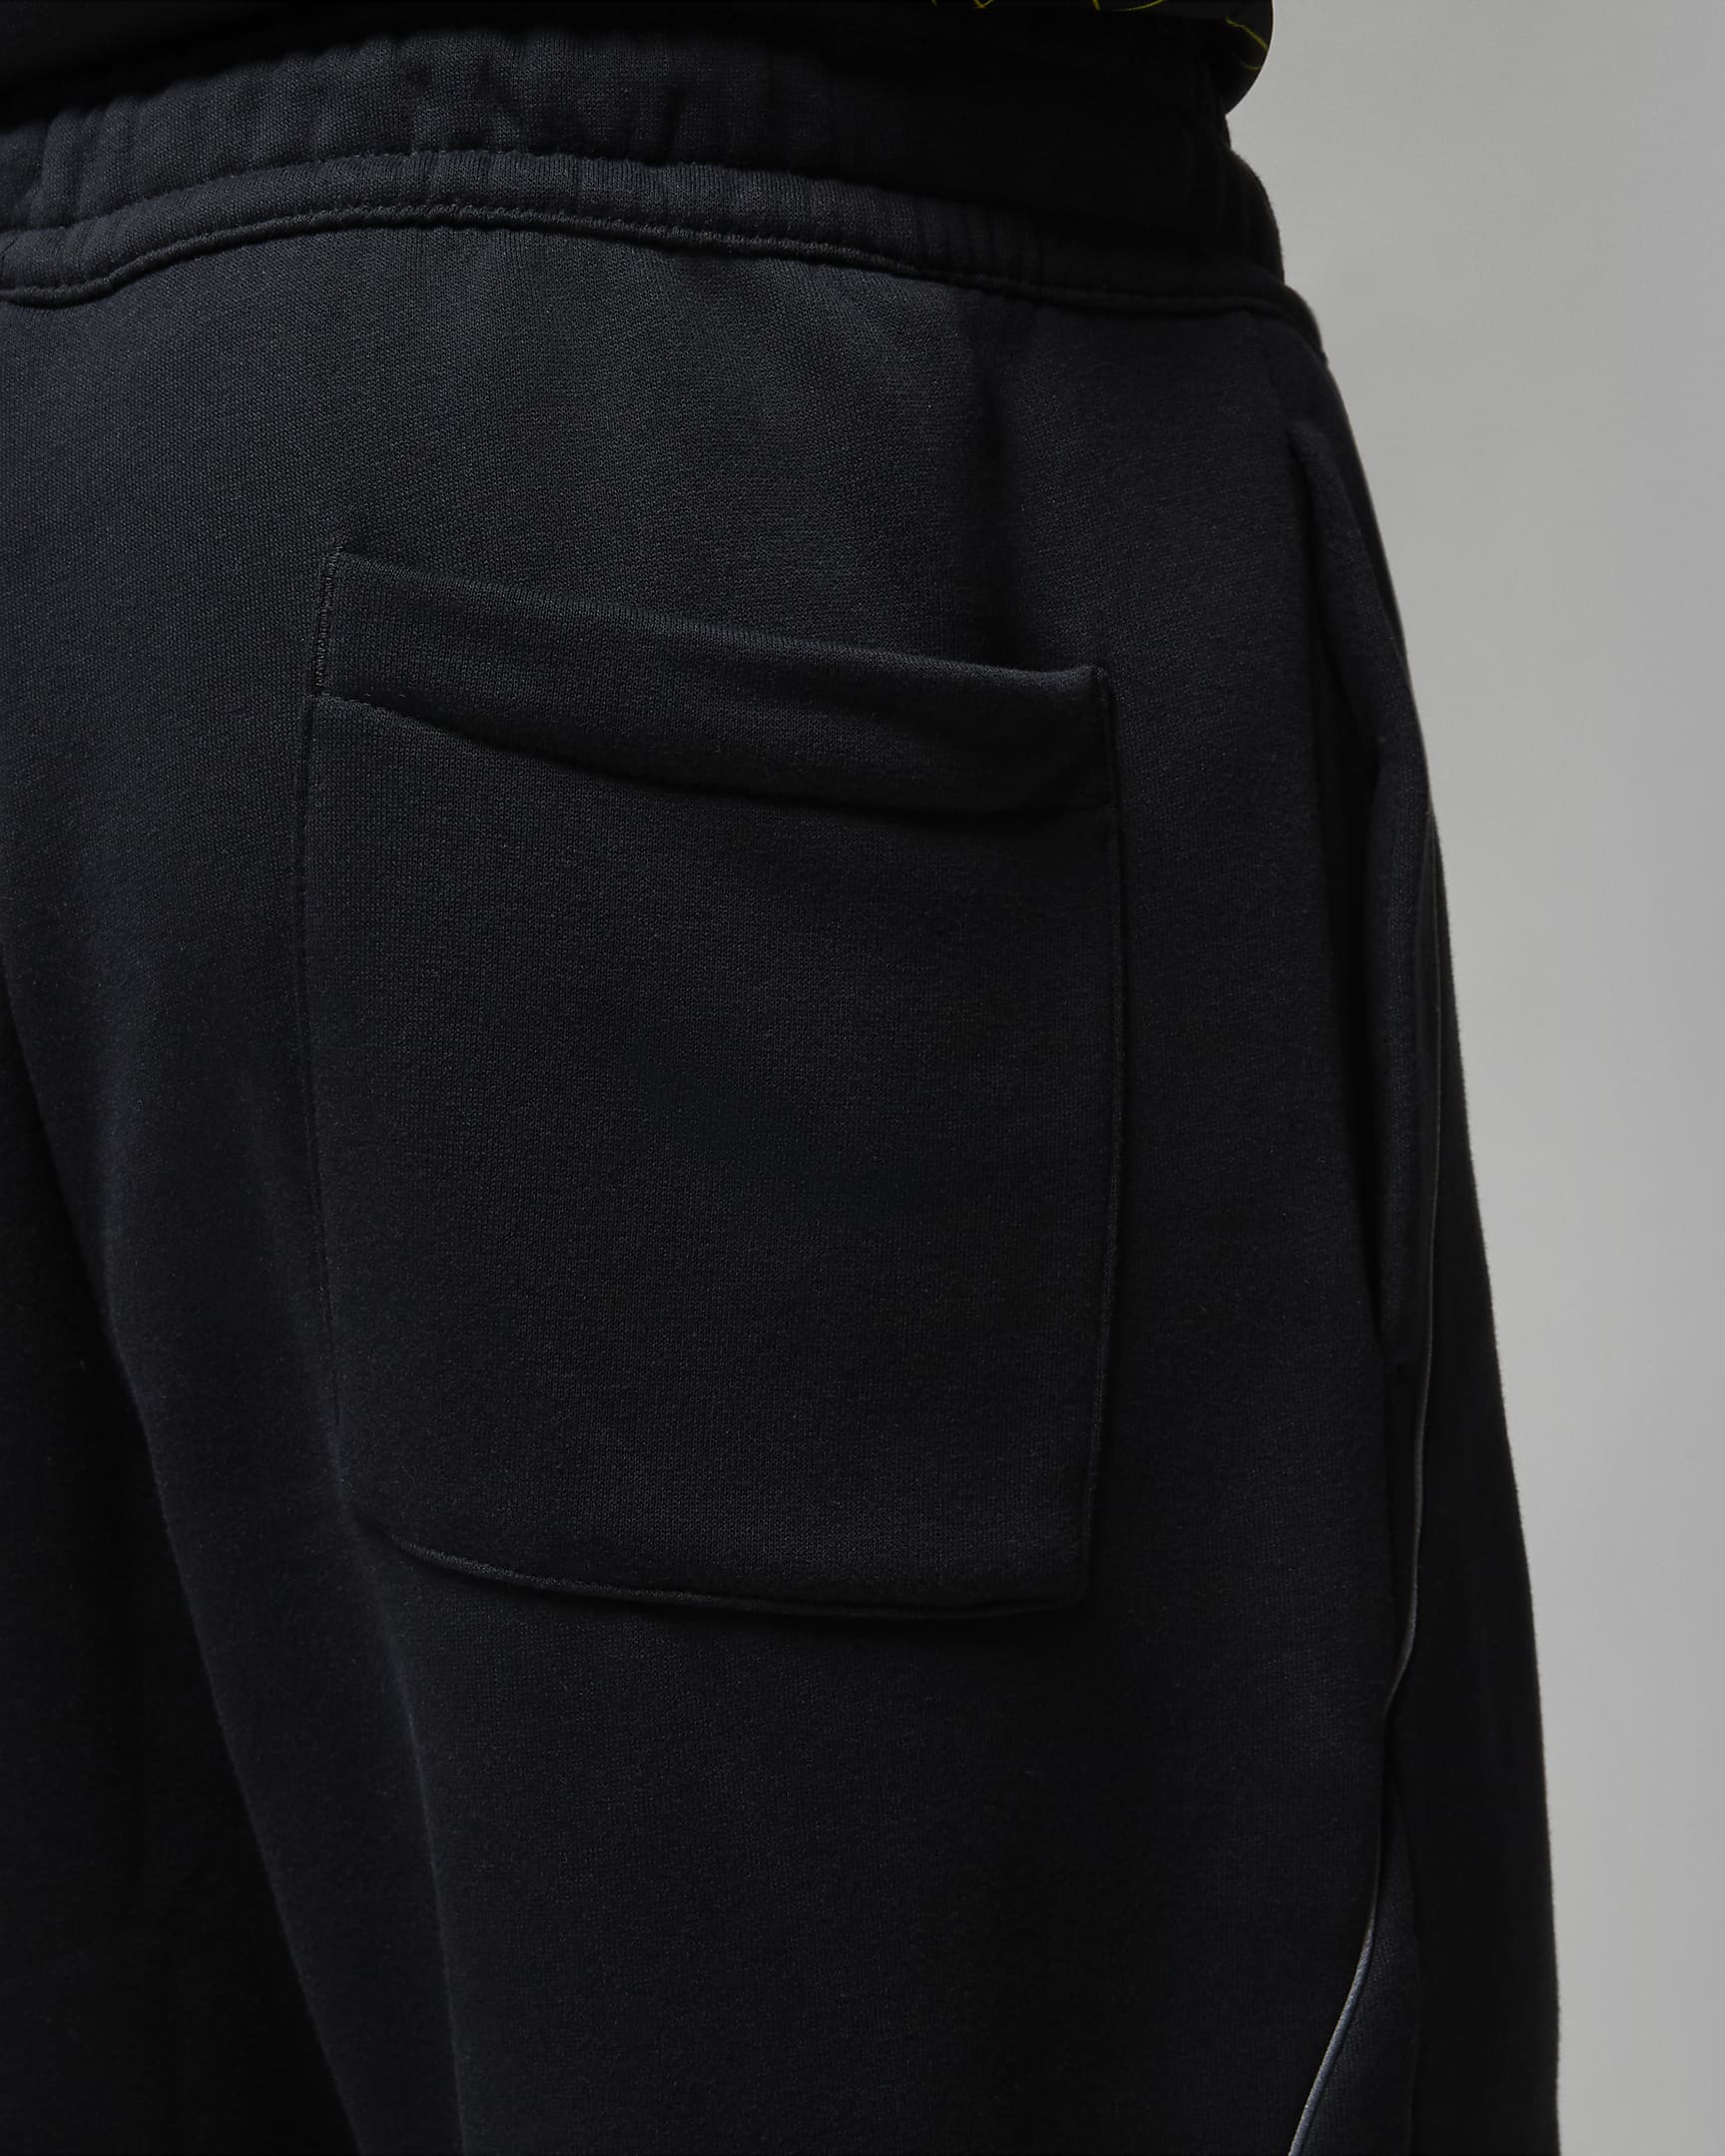 Paris Saint-Germain Men's Fleece Trousers. Nike AU